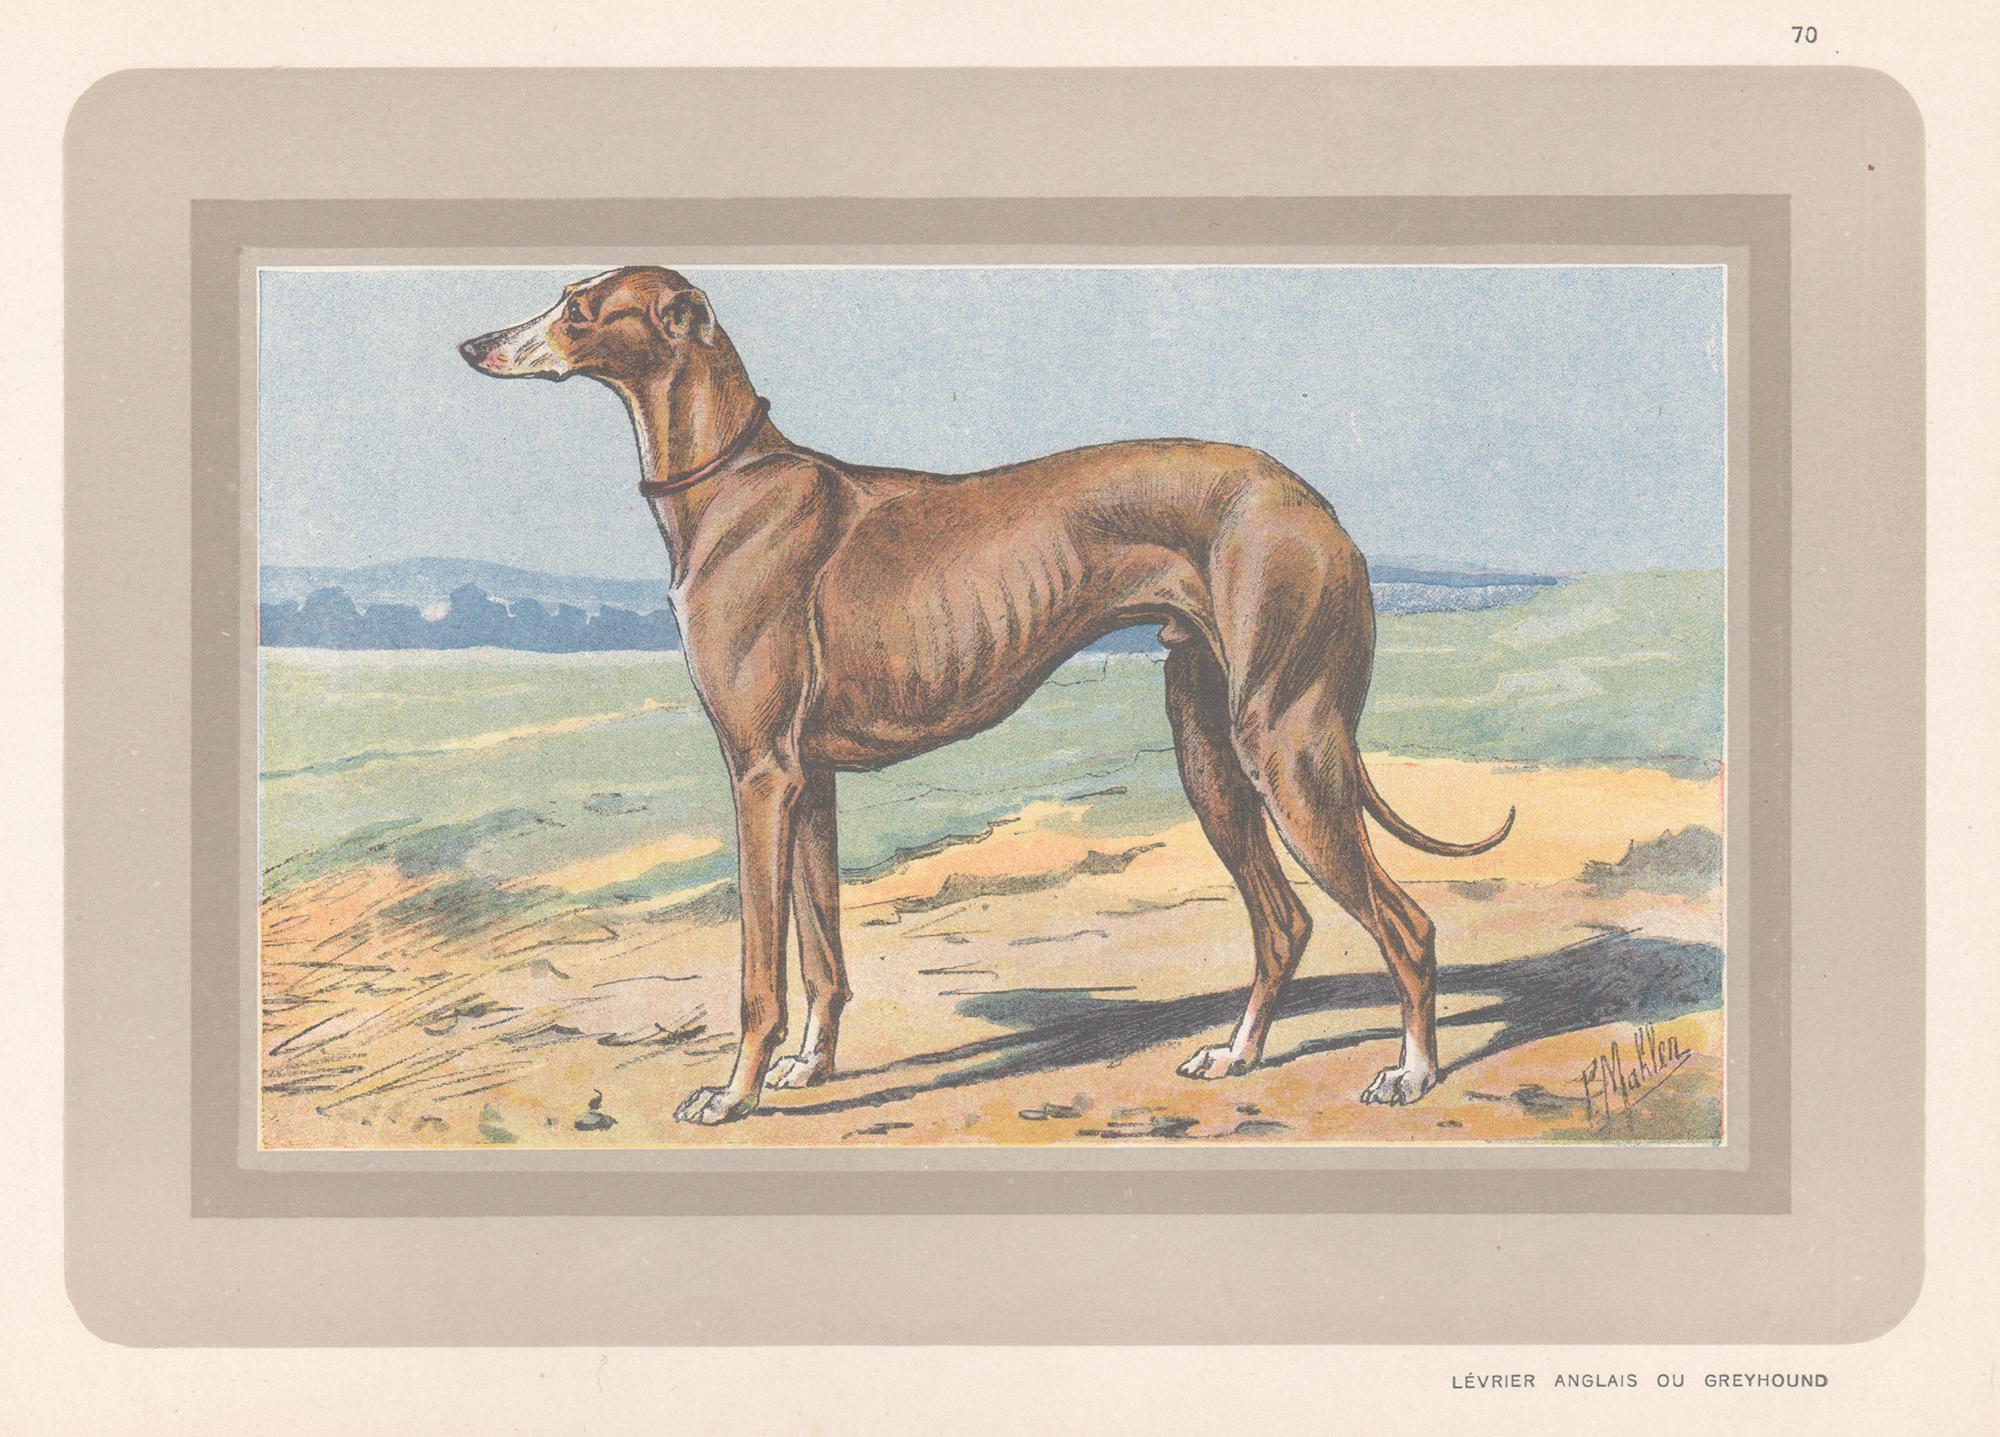 Animal Print P. Mahler - Impression chromolithographie d'un lévrier, chien de chasse français, années 1930